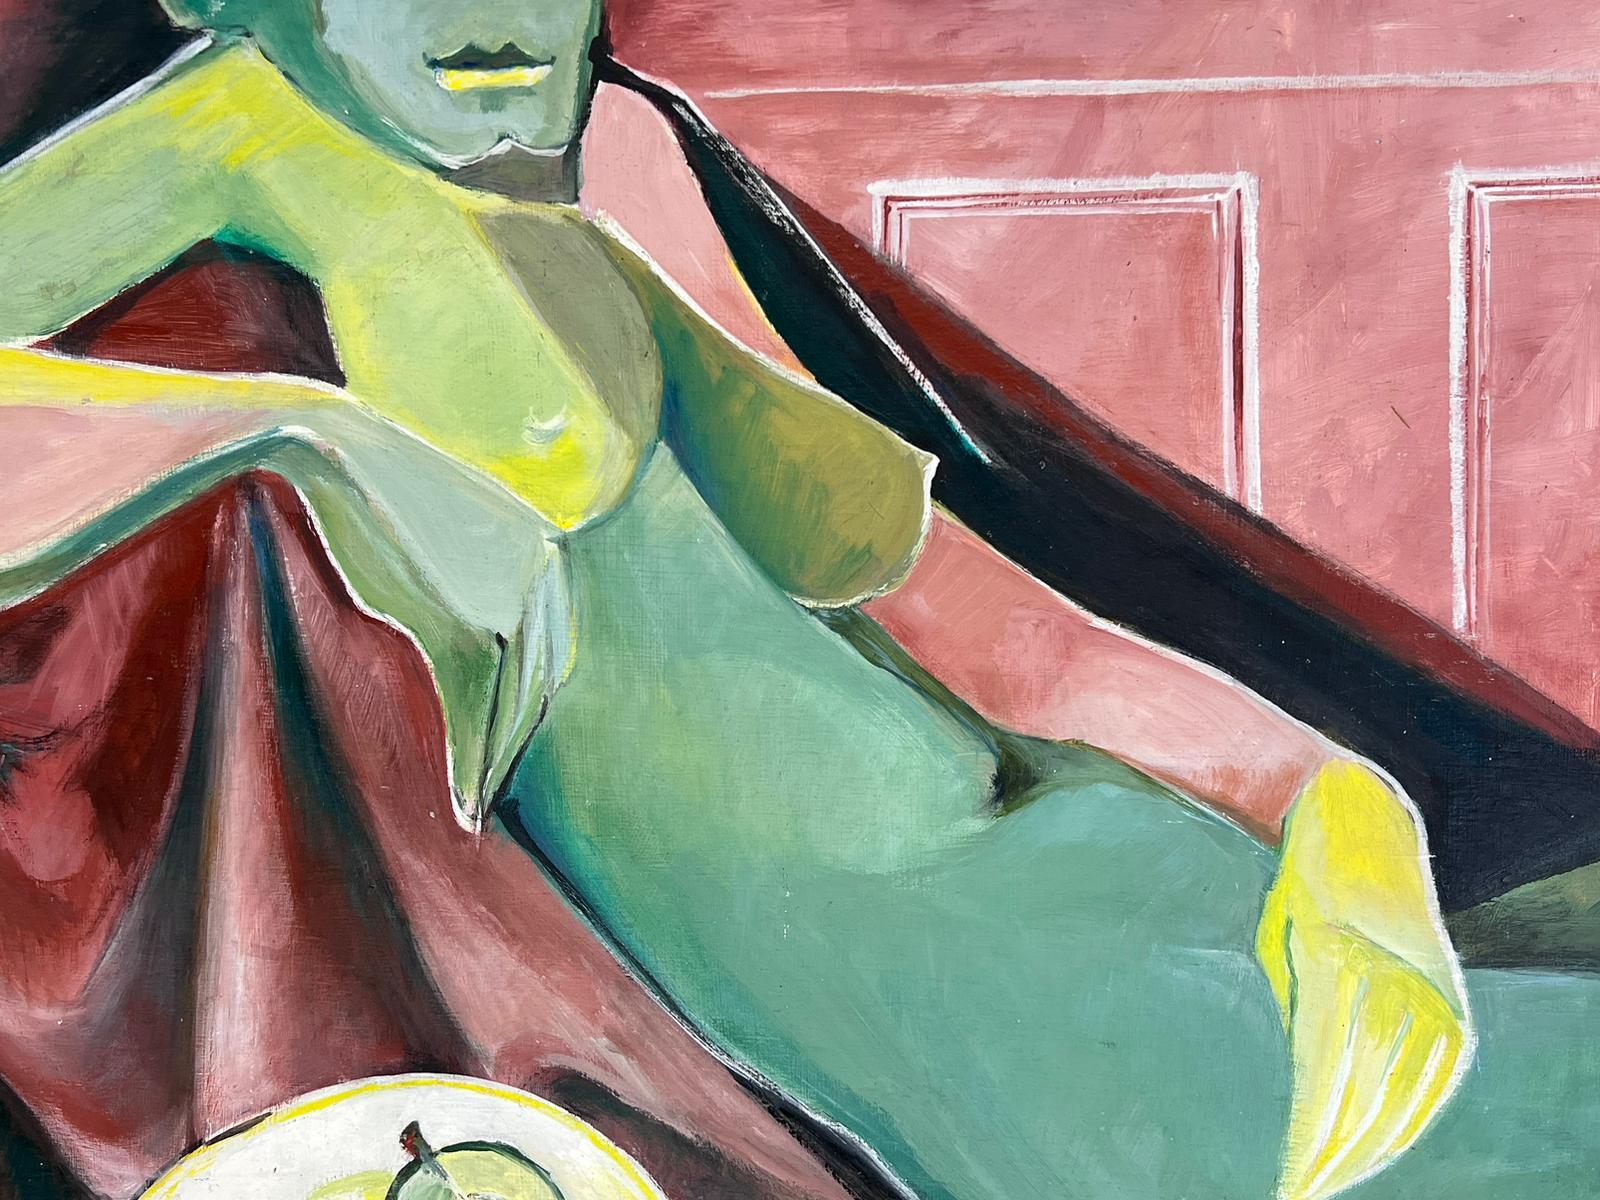 Peinture à l'huile cubiste française du 20e siècle représentant une femme nue avec des pommes vertes, signée - Painting de Helene Dadone